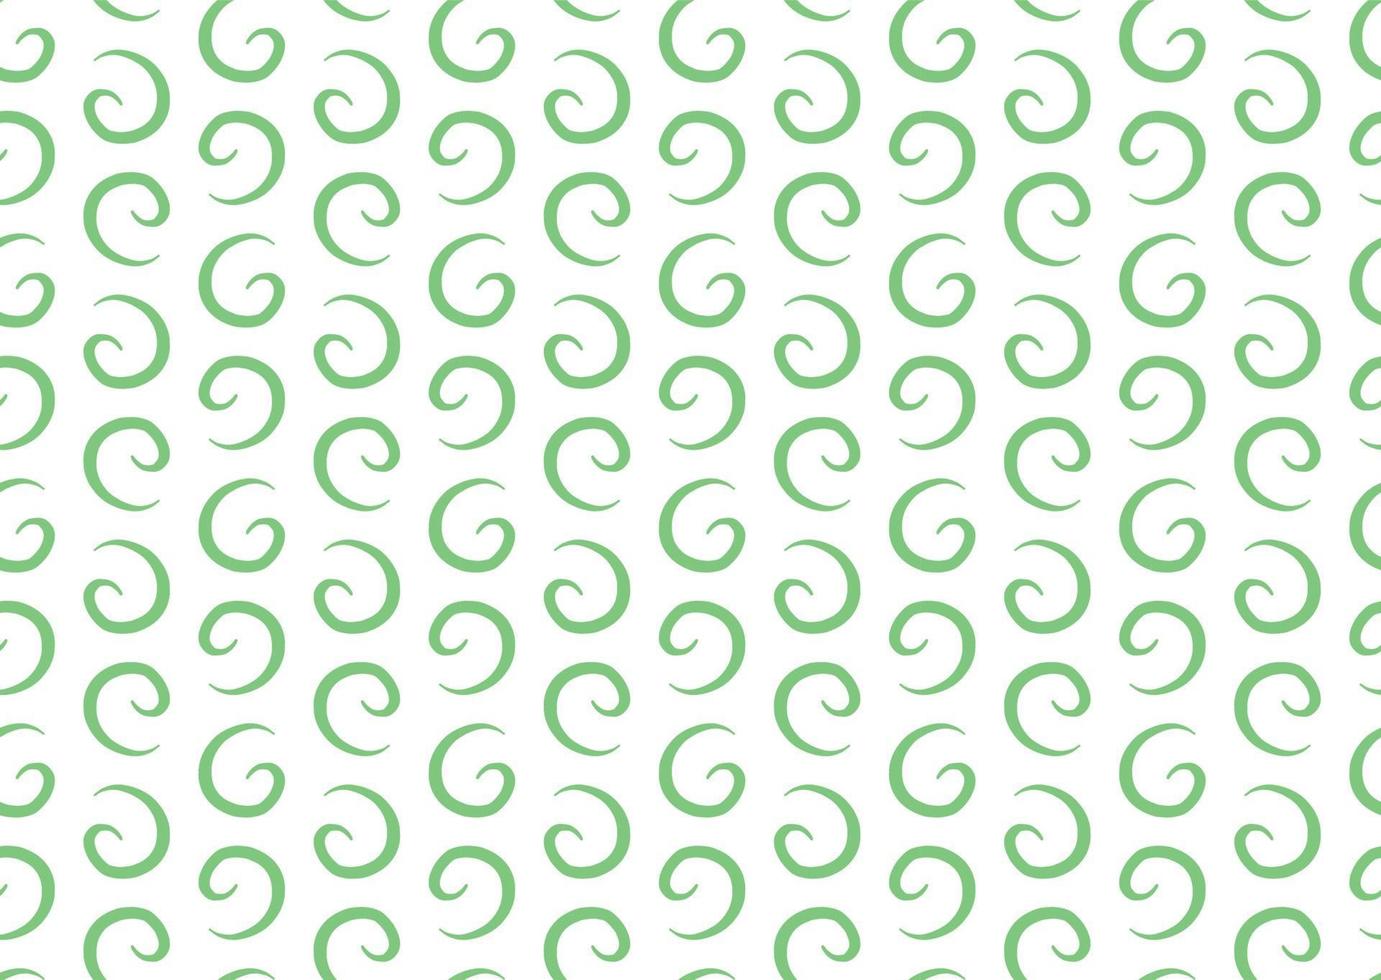 Vector texture di sfondo, seamless pattern. colori disegnati a mano, verdi, bianchi.